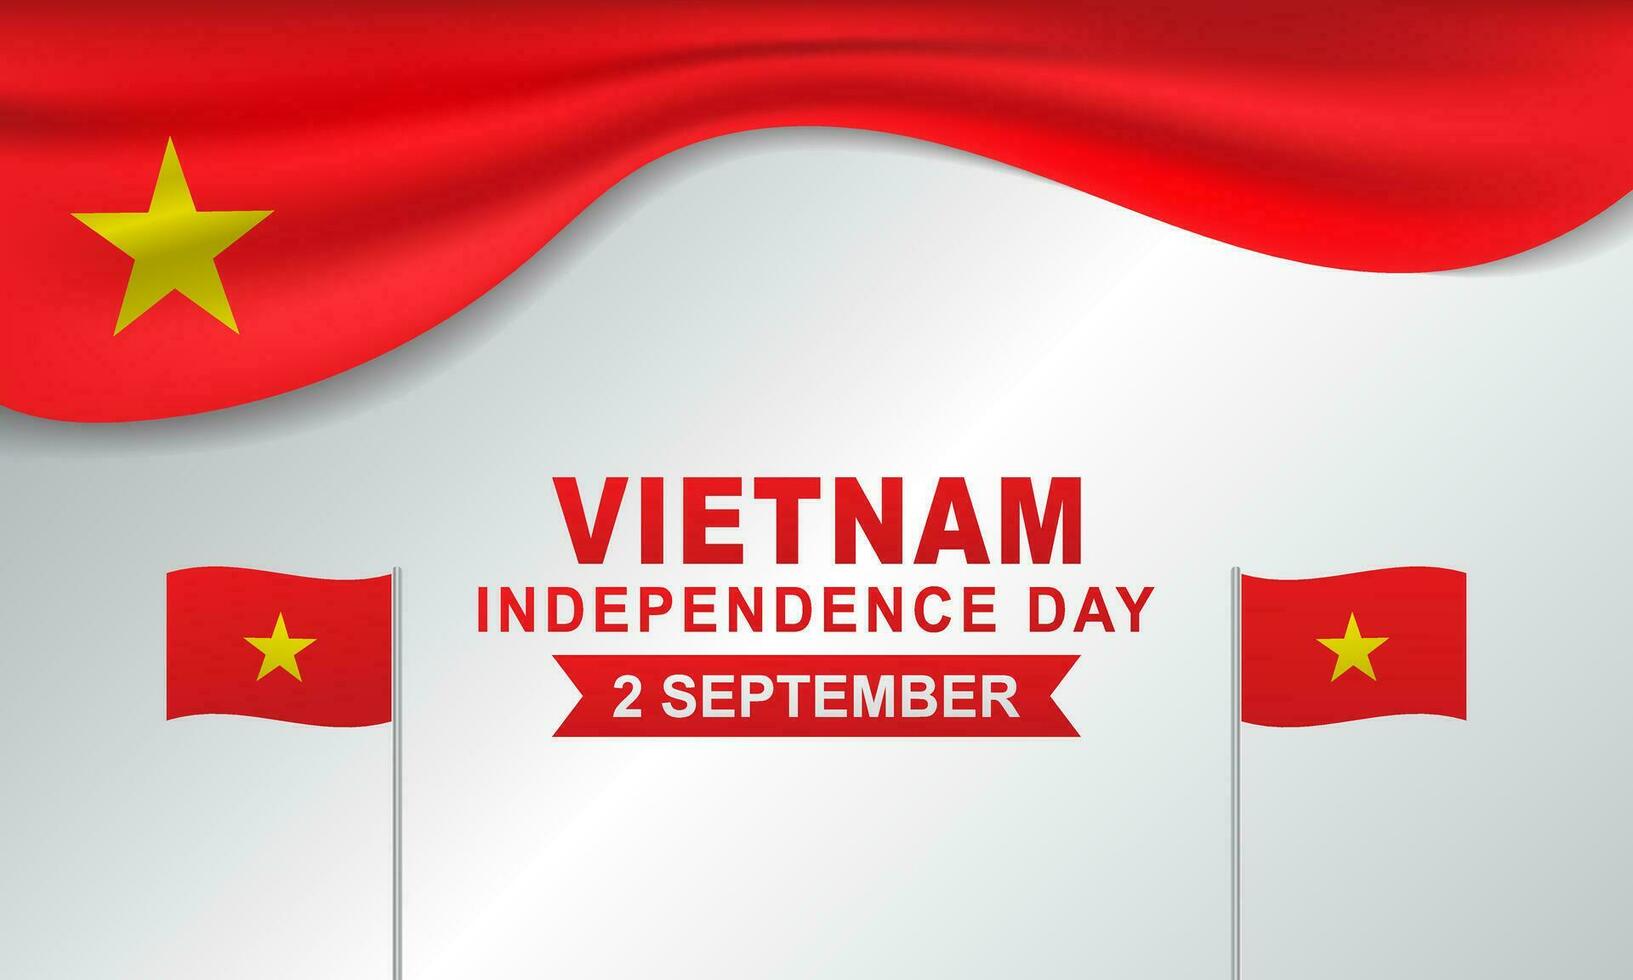 elegante fundo do Vietnã independência dia cumprimento vetor